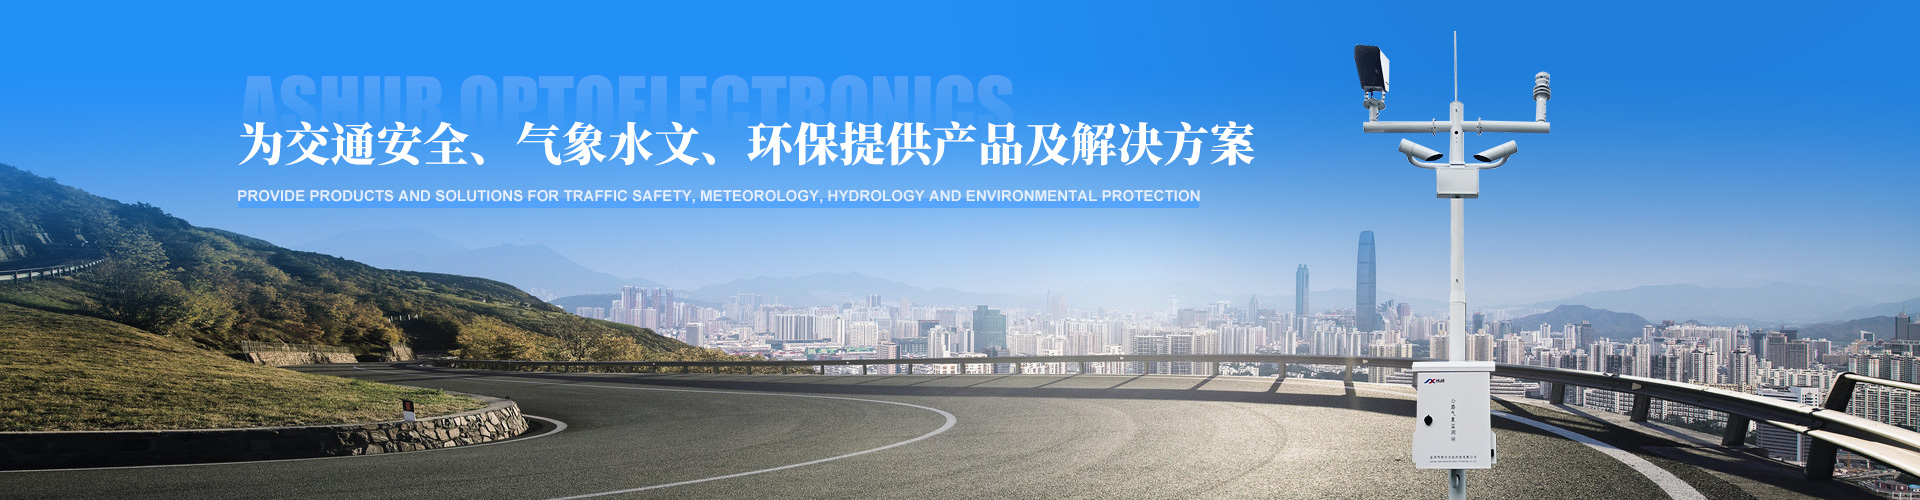 阿舒爾應邀參加第十三屆中國道路交通安全產品博覽會